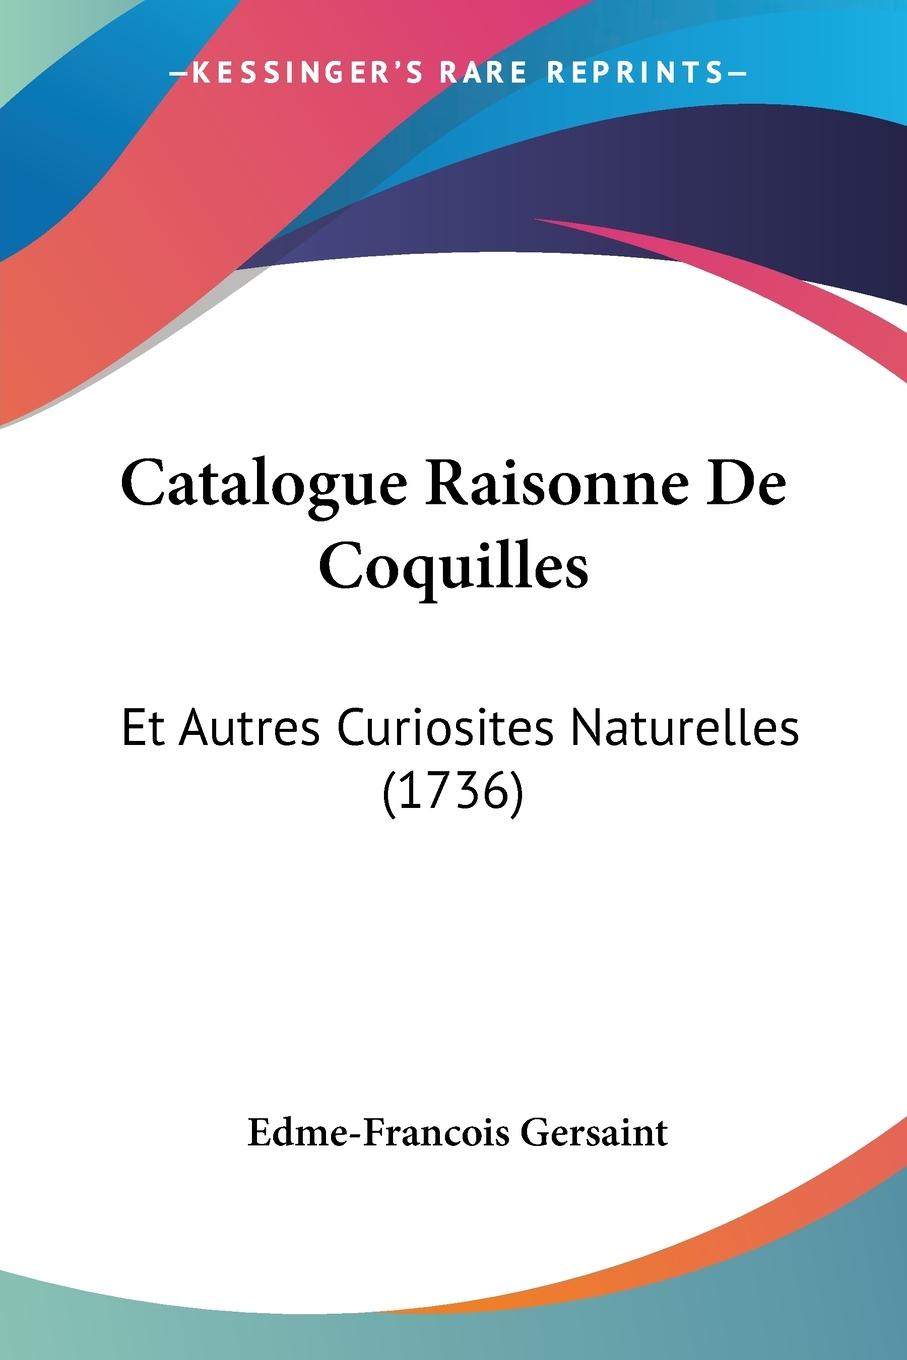 Catalogue Raisonne De Coquilles - Gersaint, Edme-Francois